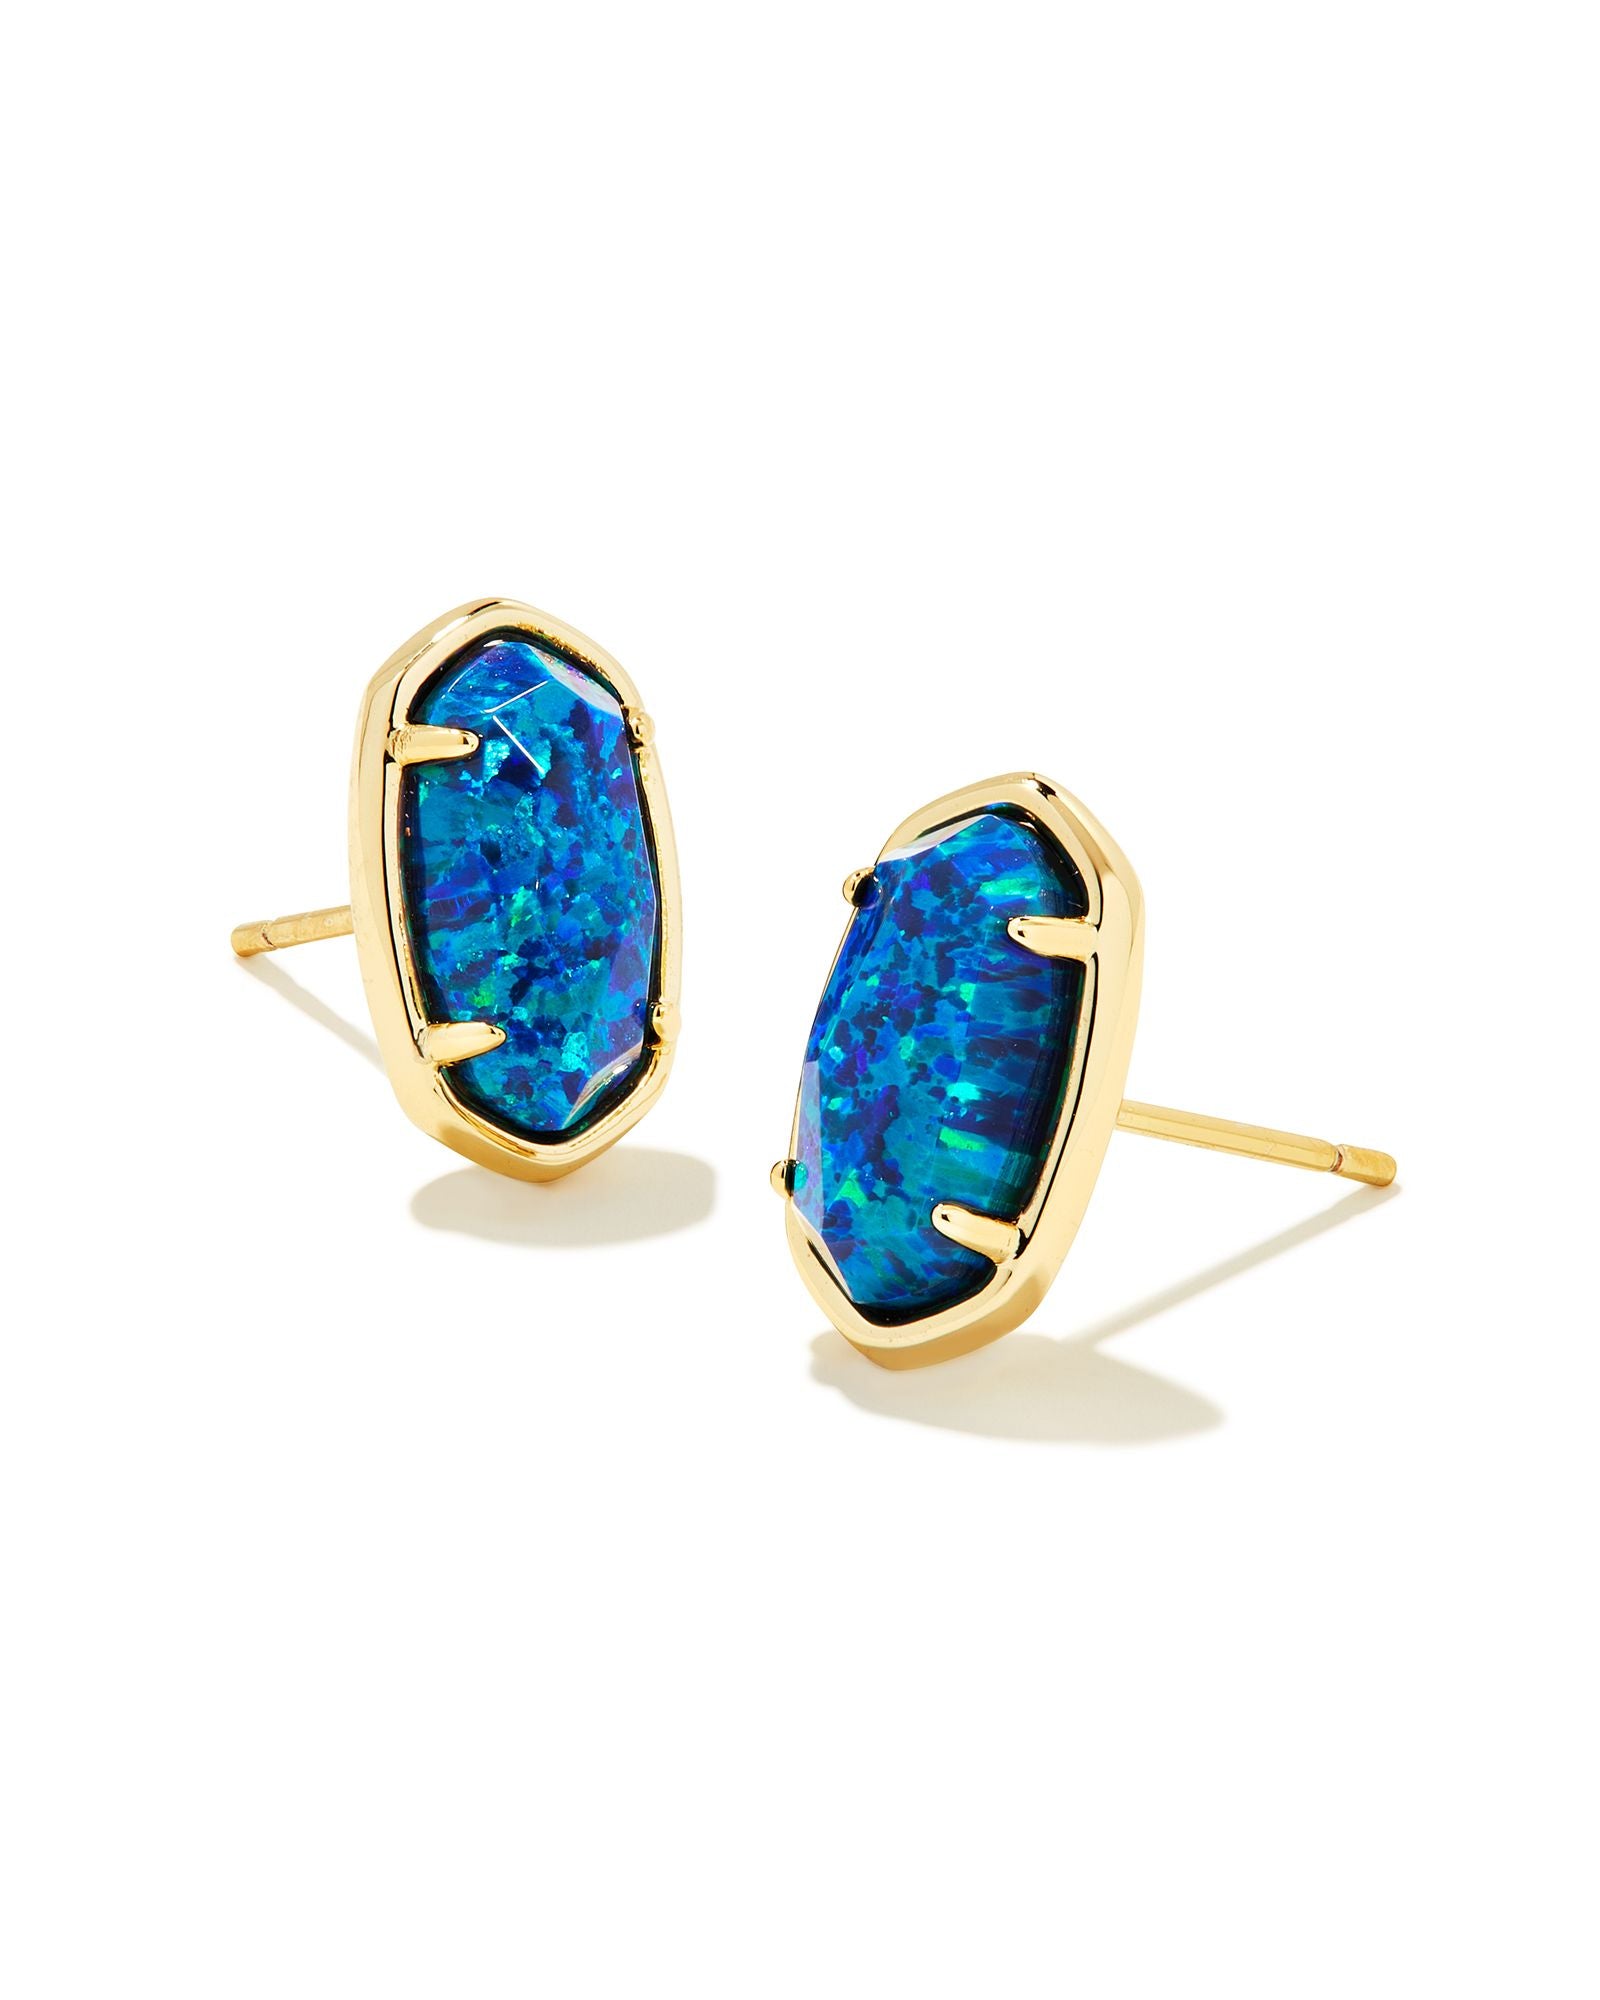 Kendra Scott Grayson Gold Blue Opal Stud Earrings